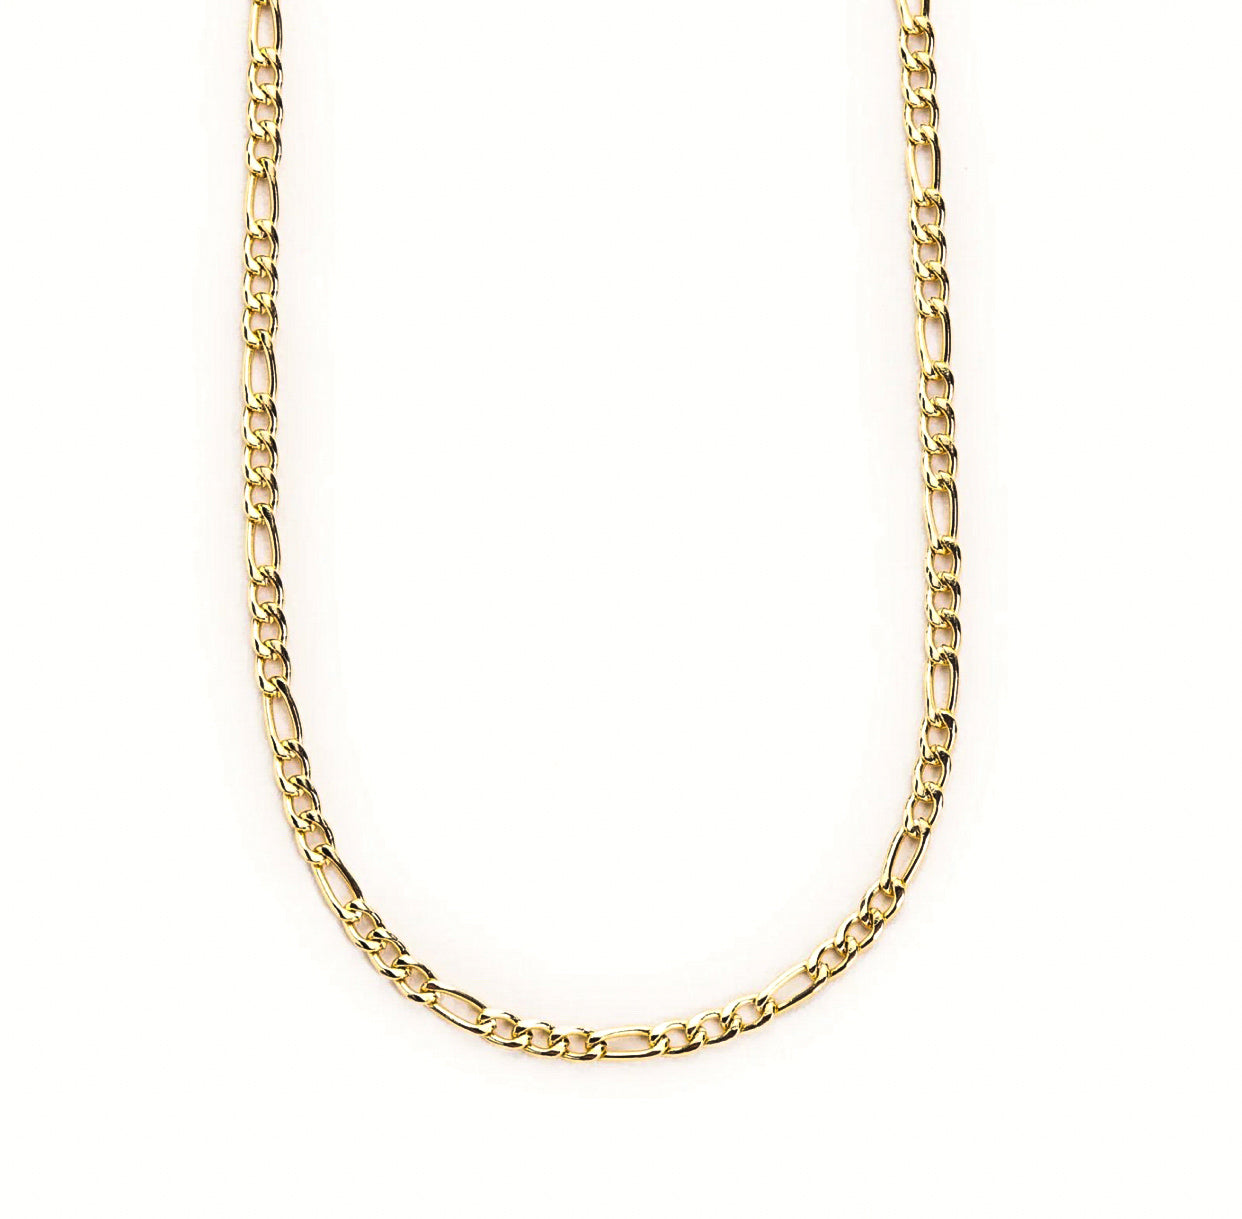 Tasha Gold Filled Necklace